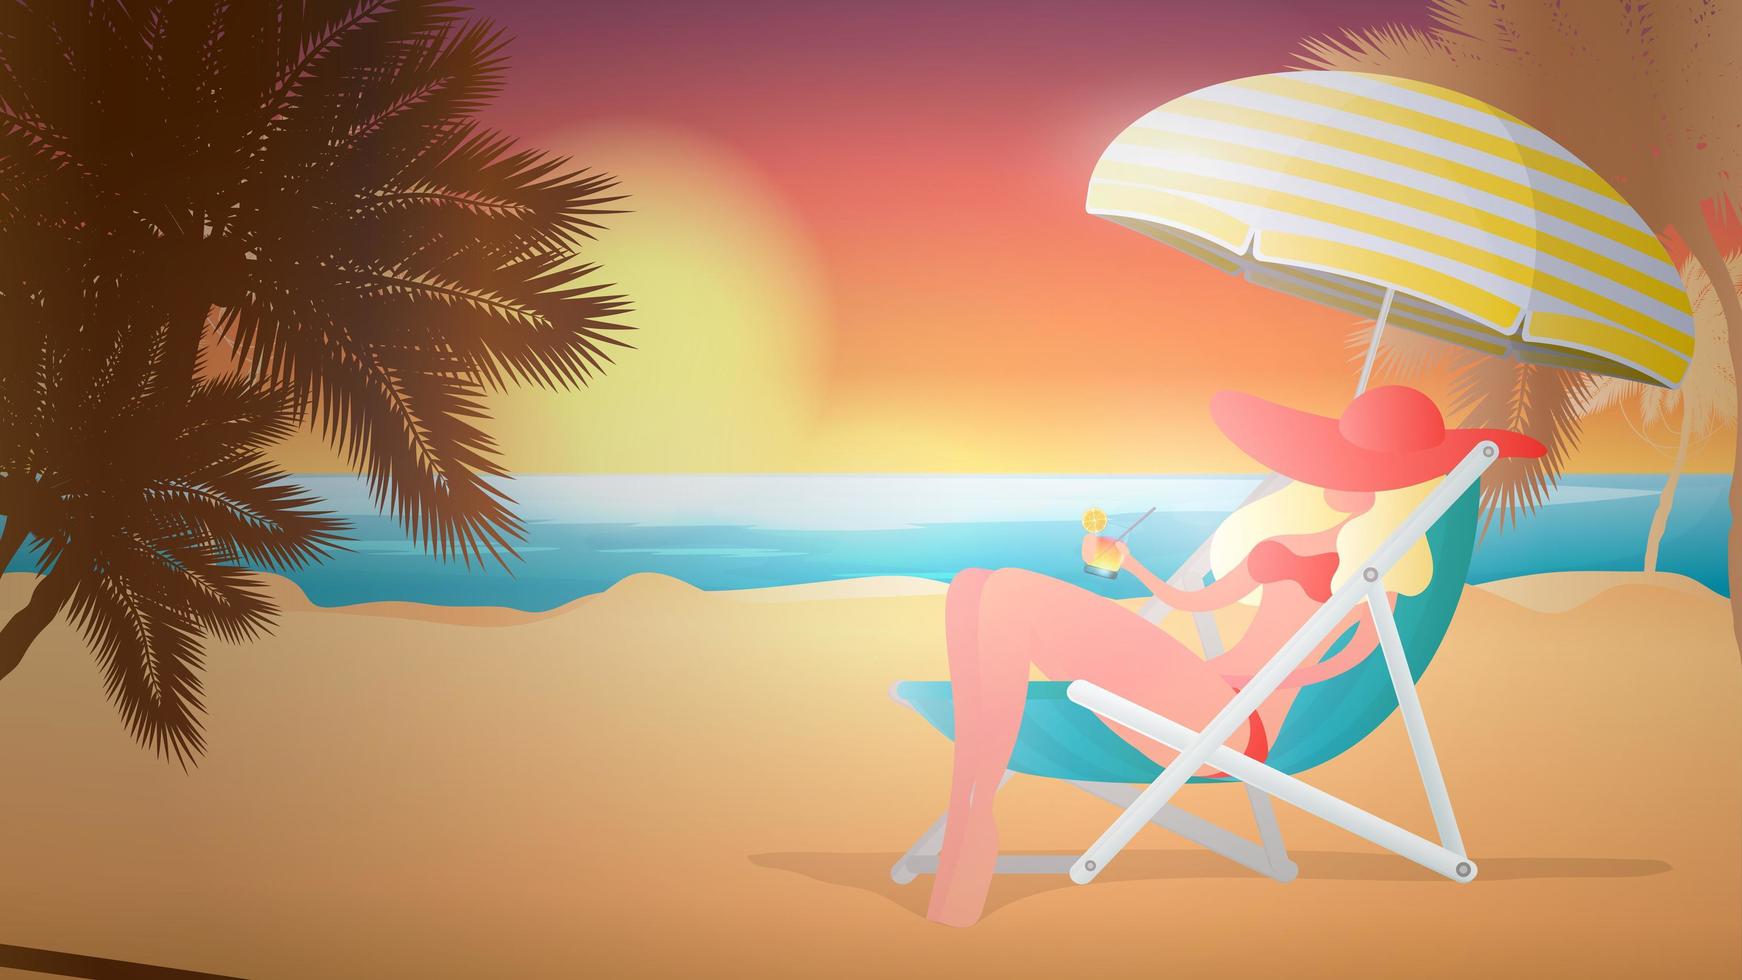 flicka i en baddräkt vilar på stranden. solnedgång, palmer, cocktail, solstol, parasoll. vektor illustration.